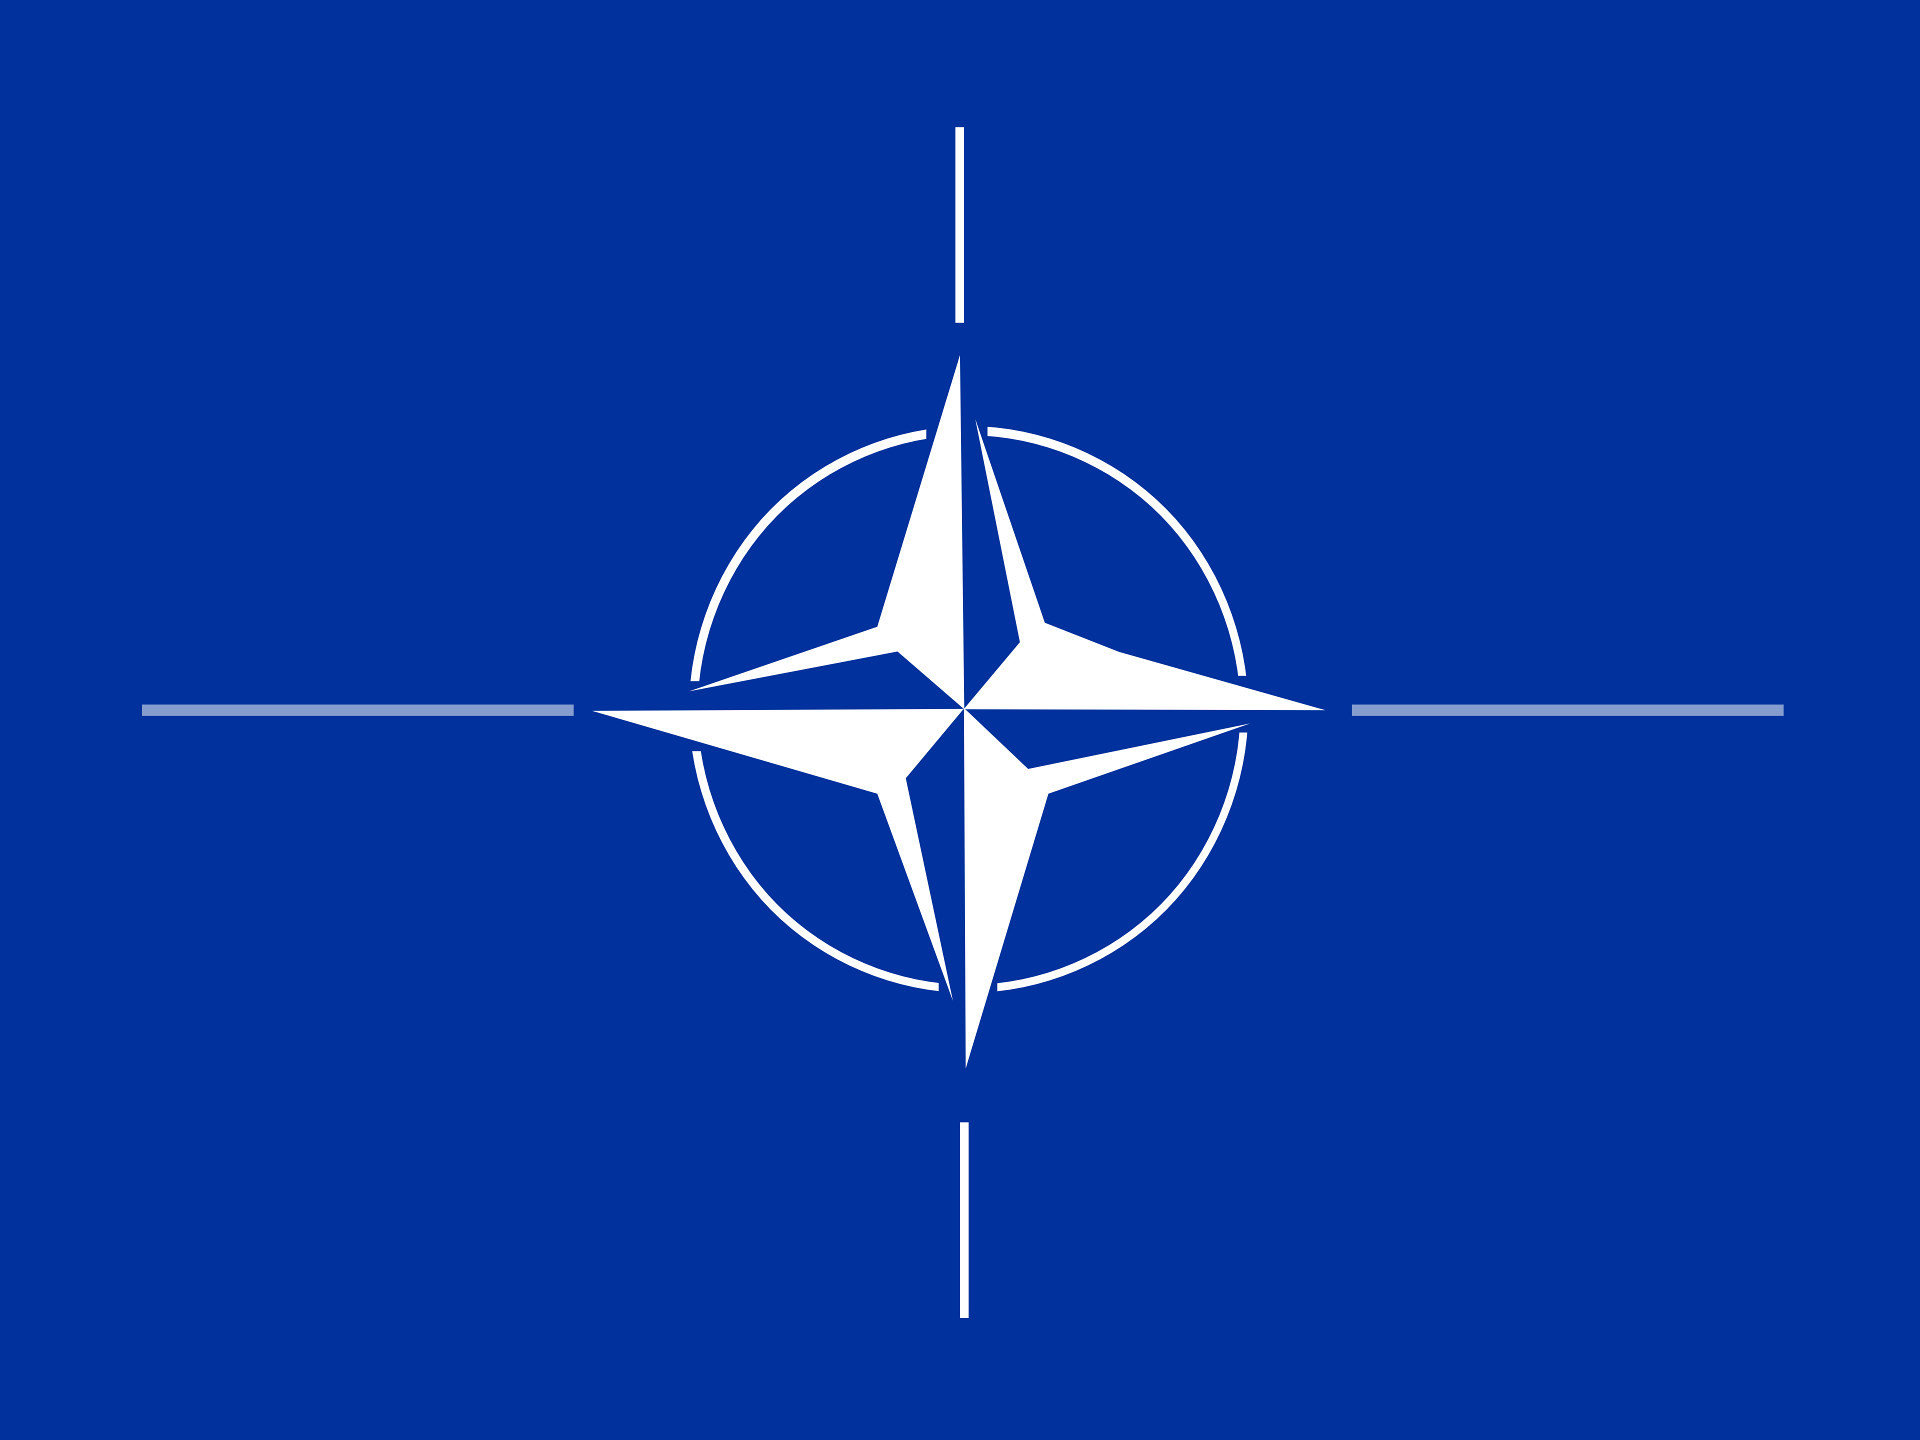 РФ нарушает территориальную целостность Молдовы, - НАТО